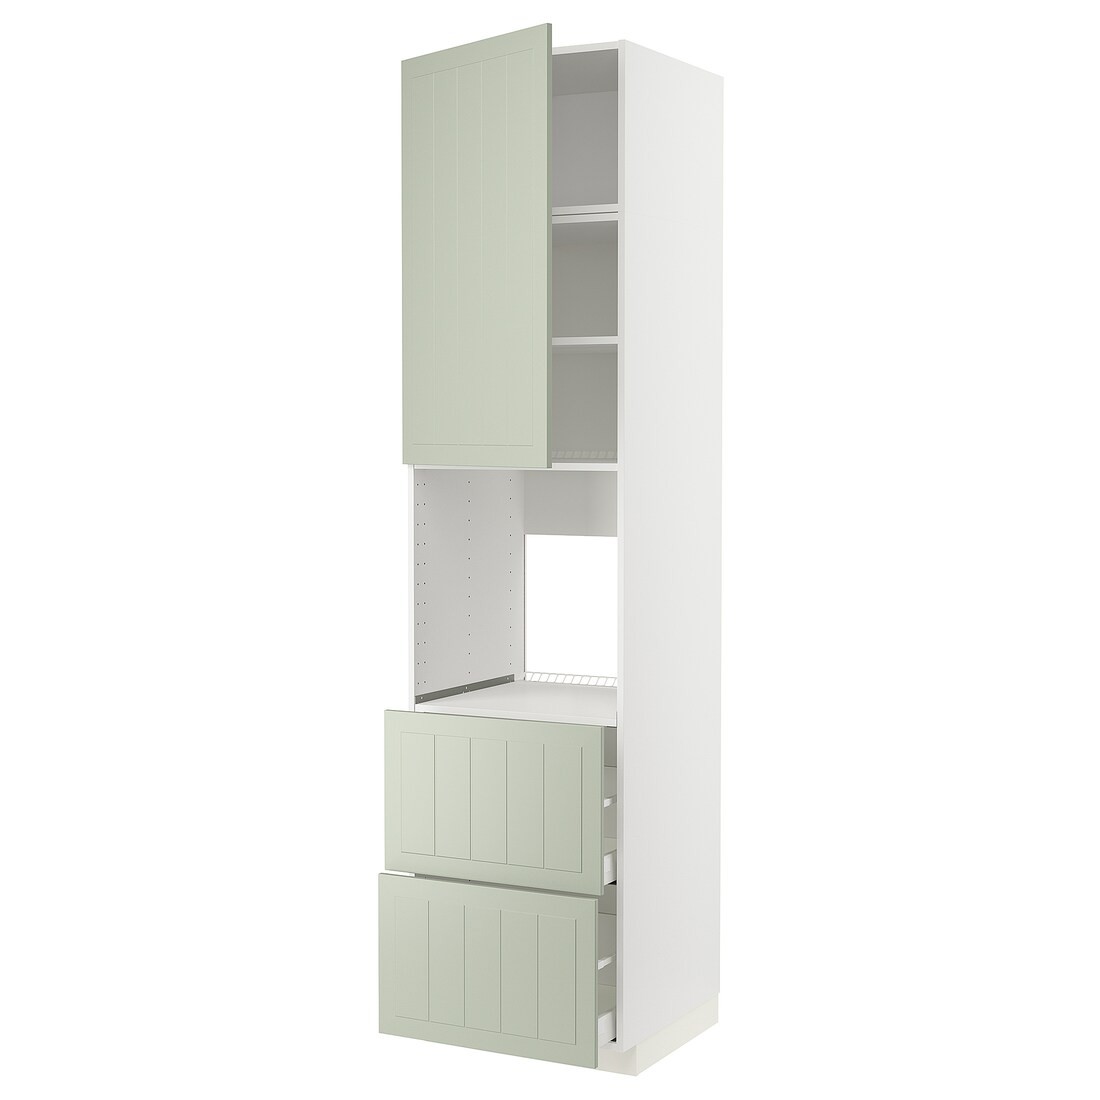 IKEA METOD МЕТОД / MAXIMERA МАКСИМЕРА Высокий шкаф для духовки, белый / Stensund светло-зеленый, 60x60x240 см 59486306 594.863.06